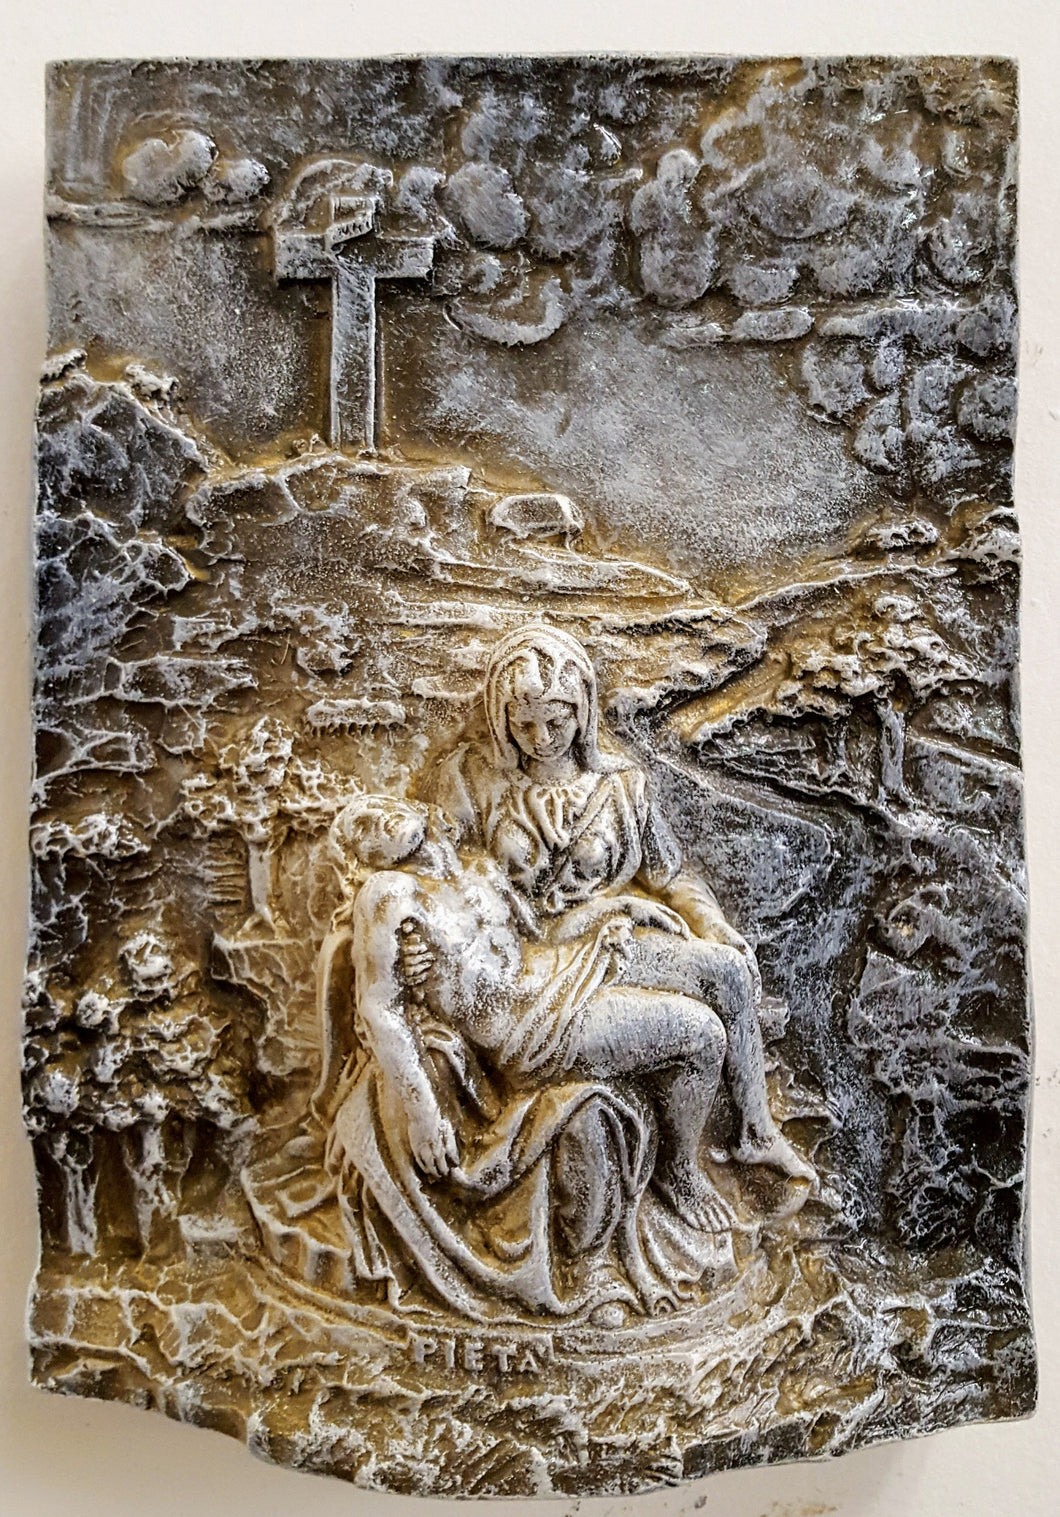 Vintage Sculpture Michelangelo's Pieta Wall Sculpture Mother Mary Jesus 3D